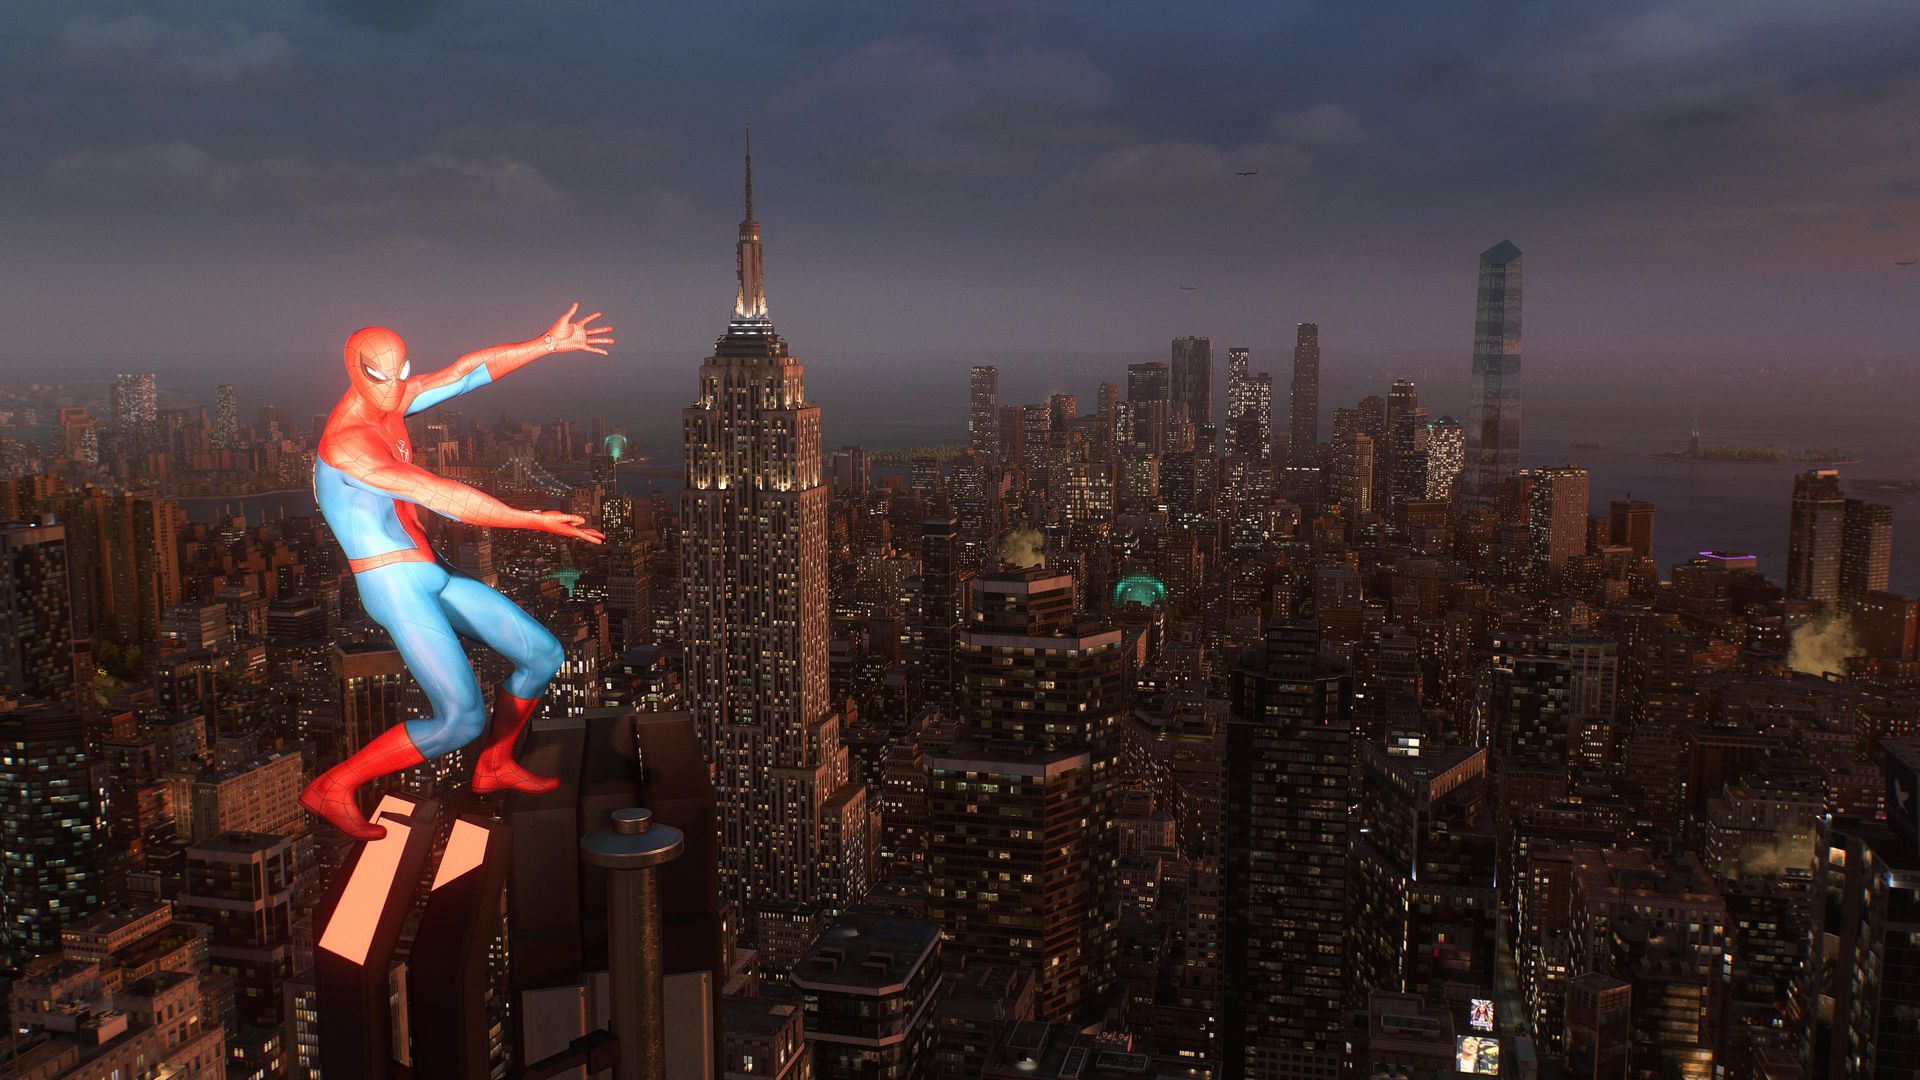 Image: Spider-Manが摩天楼の頂上に立ち、両腕を広げ、夕暮れのニューヨーク市の景色を提示しています。Spider-Man 2は美しいゲームです！